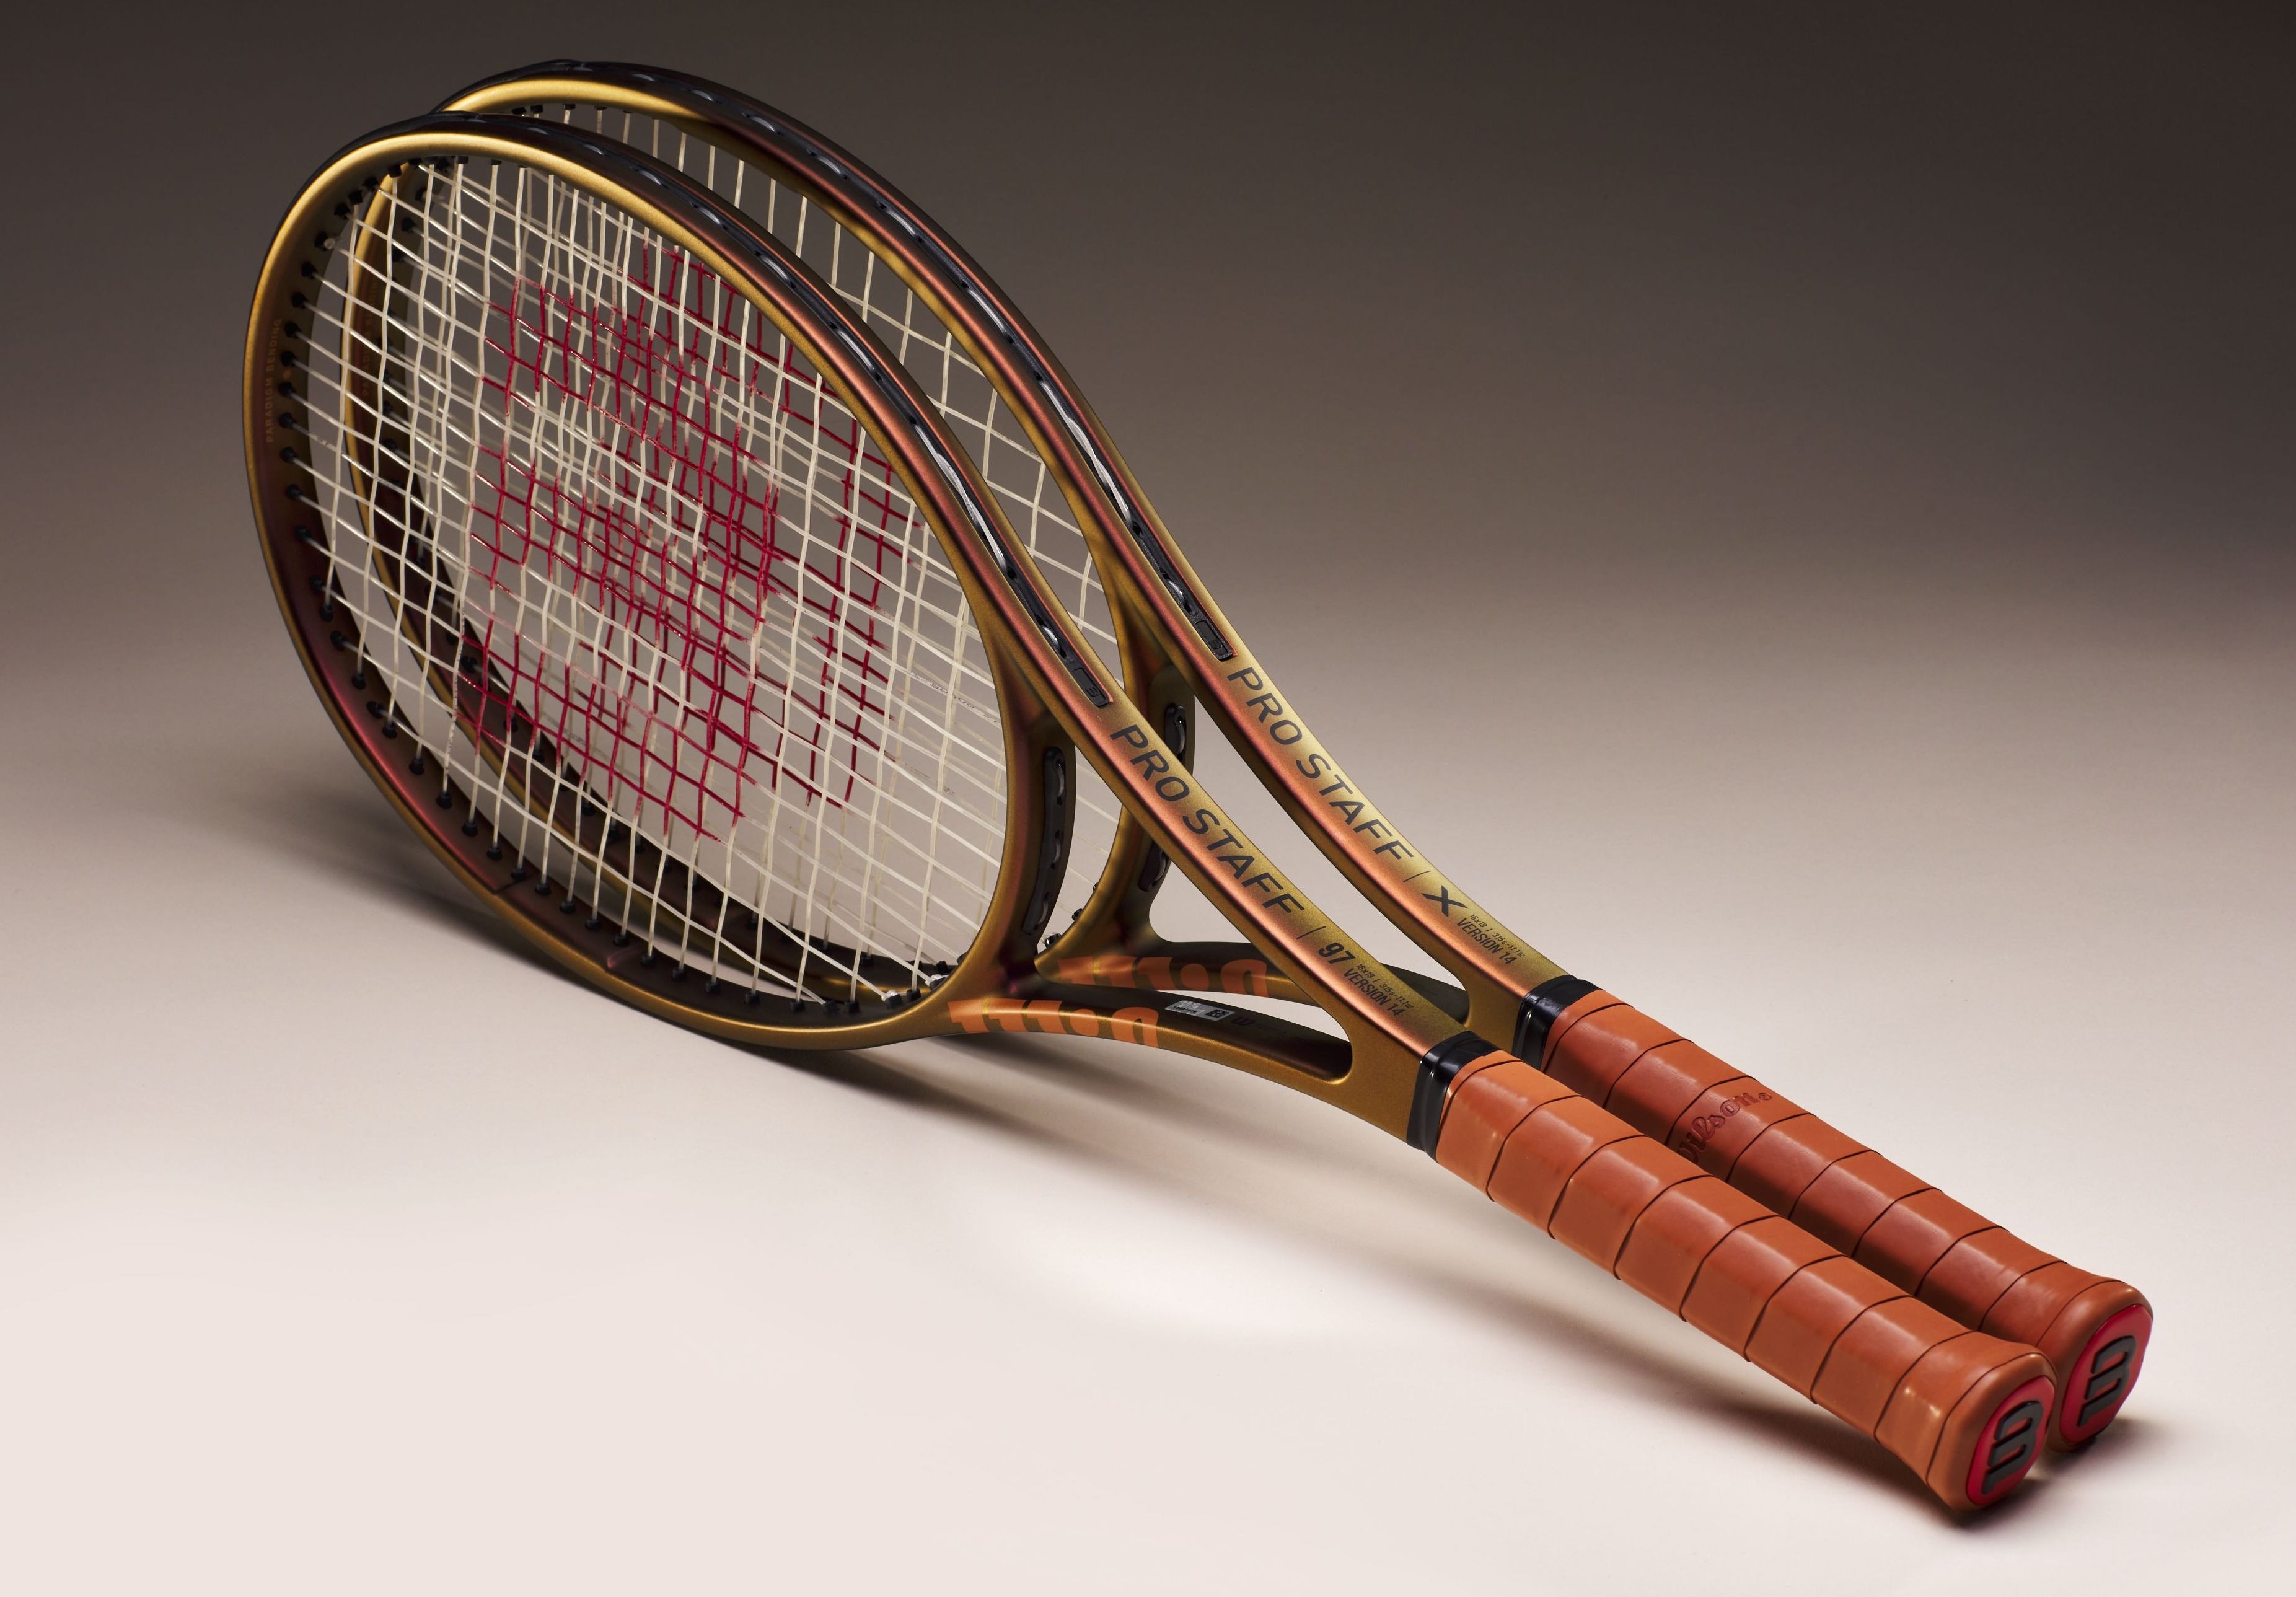 10 raketat që kanë bërë historinë e tenisit